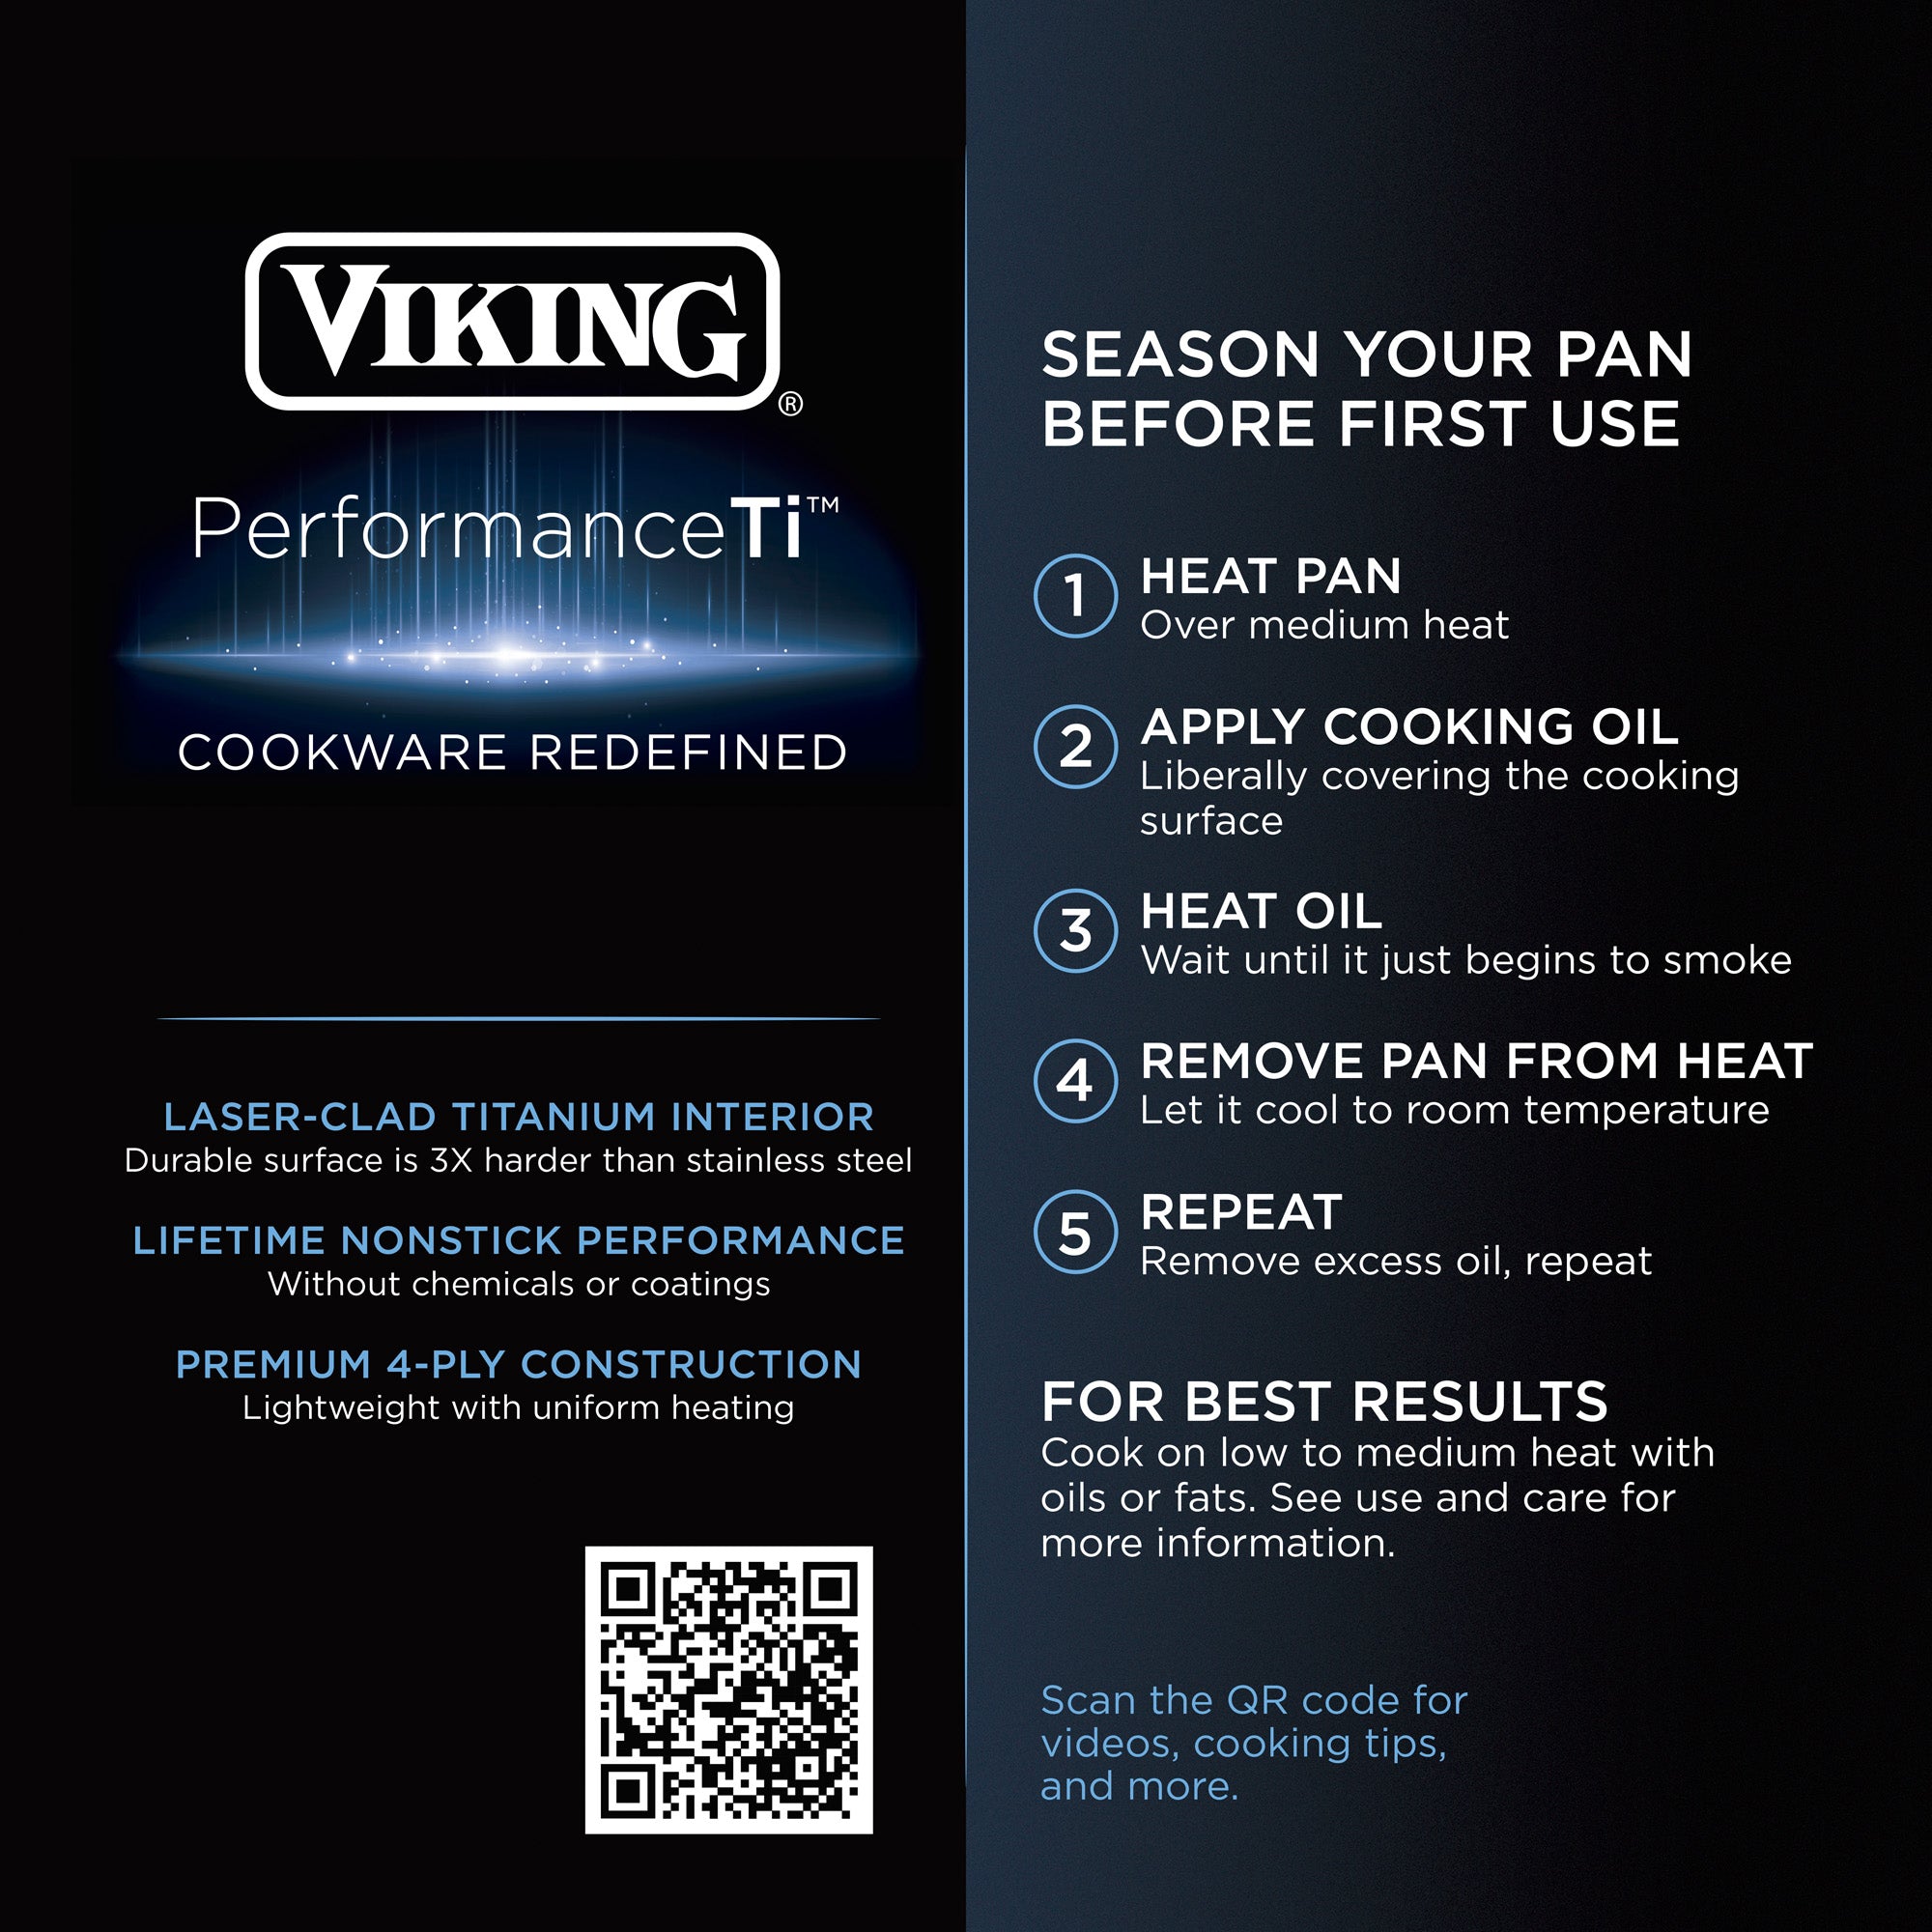 Viking Professional 5-Ply, 3-Quart Sauce Pan – Domaci